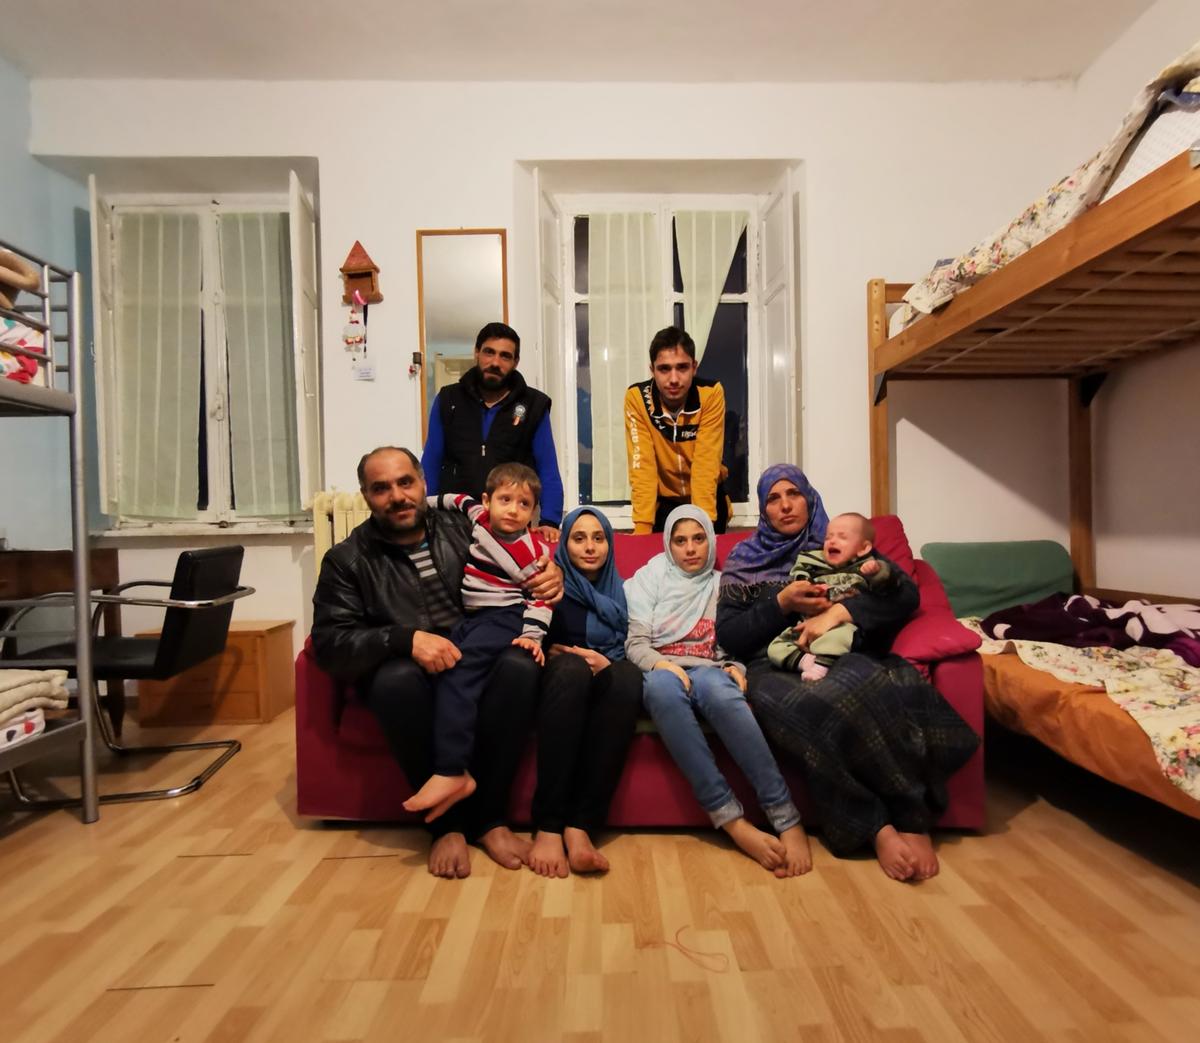 La famiglia di Khadija e Abdel Moein, nella comunità "Il filo d'erba"